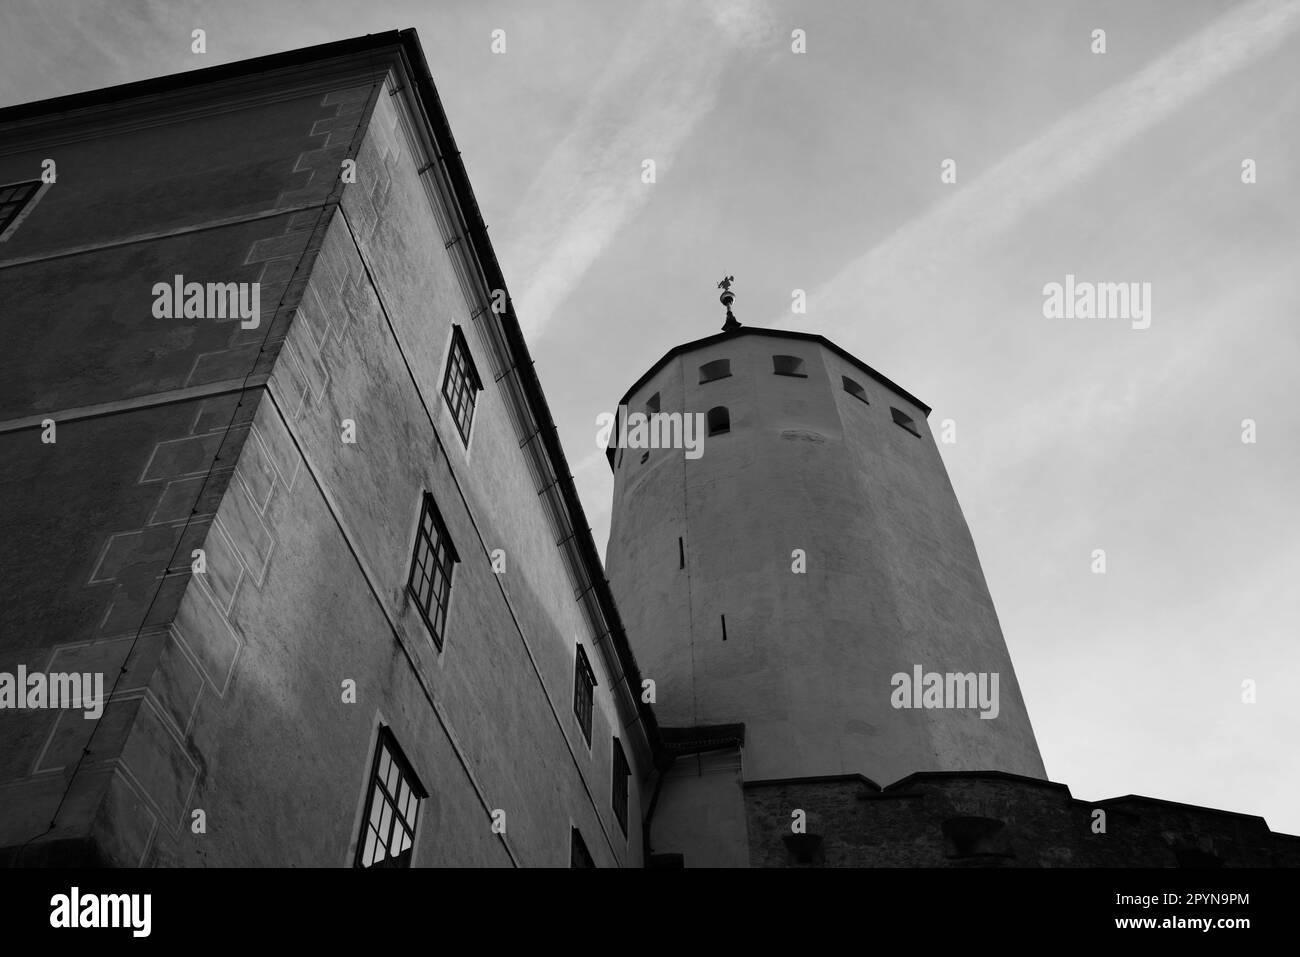 Forchtenstein castle, Austria Stock Photo